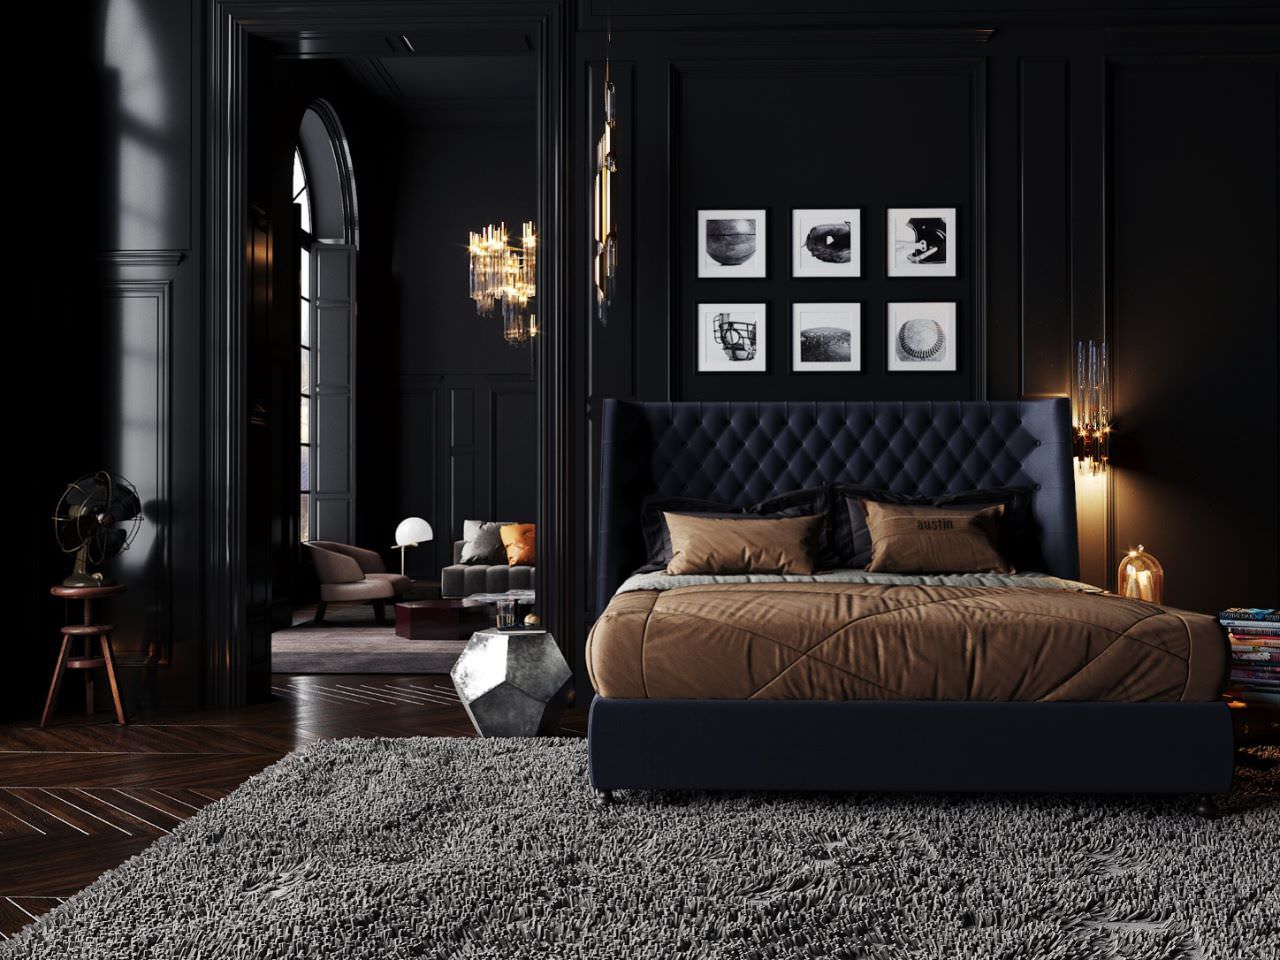 Phòng ngủ màu đen huyền ảo làm tôn lên vẻ đẹp của các món nội thất cao cấp